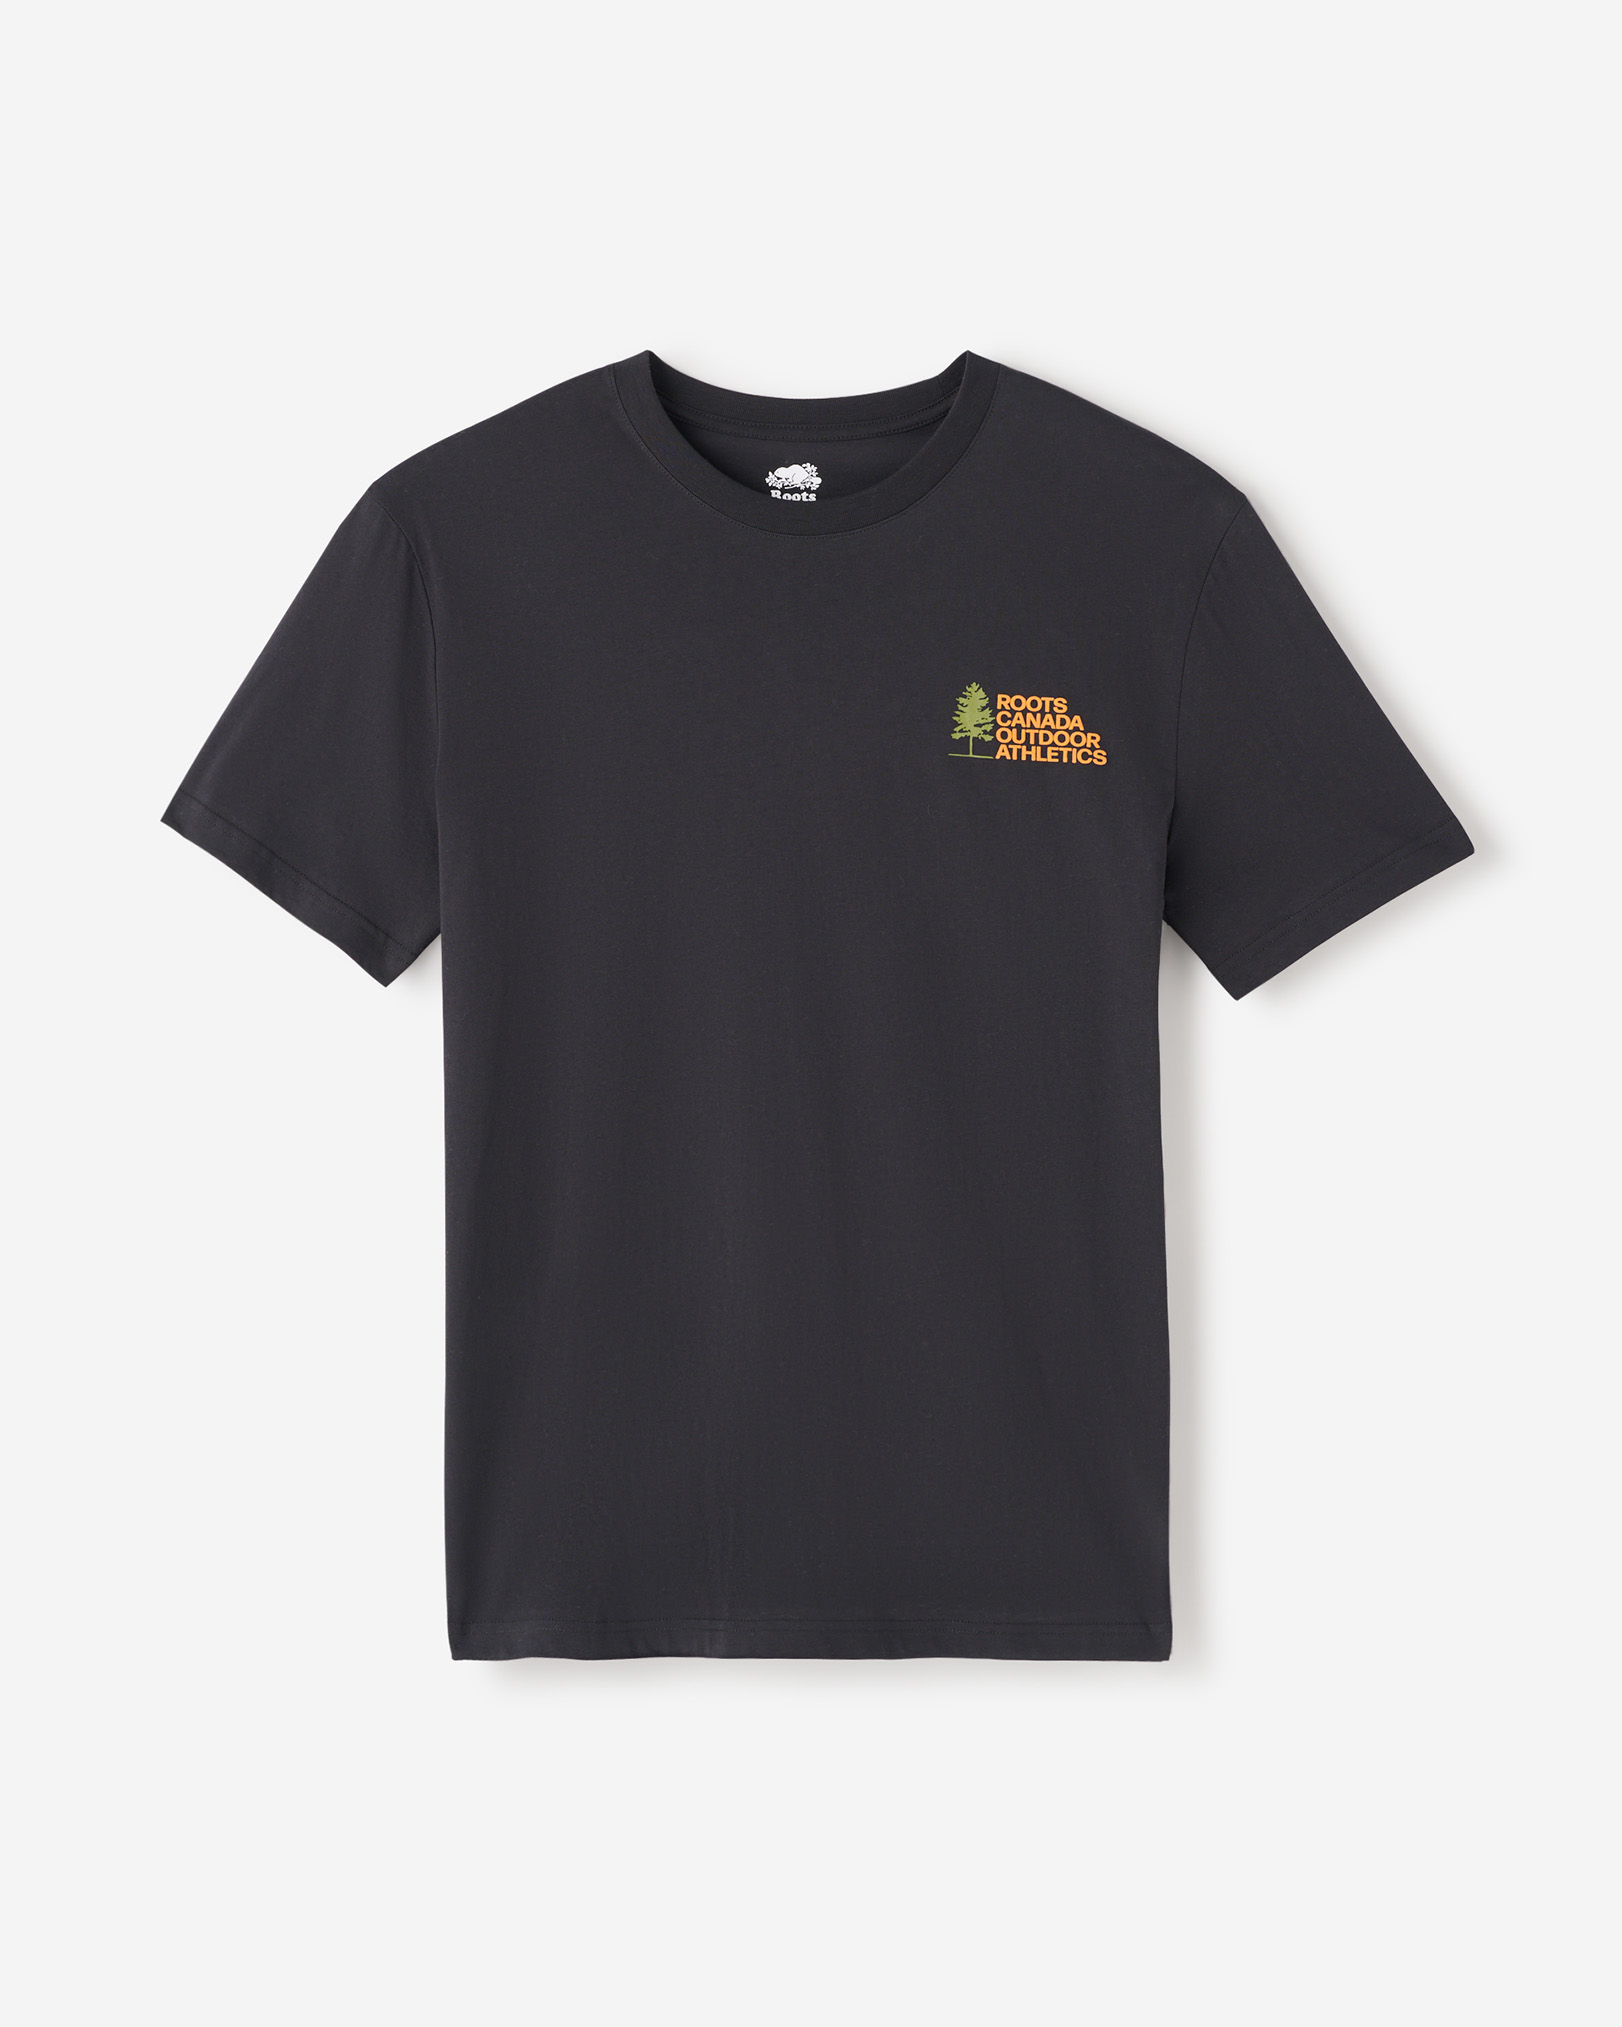 Roots Men's Outdoor Athletics T-Shirt in Black